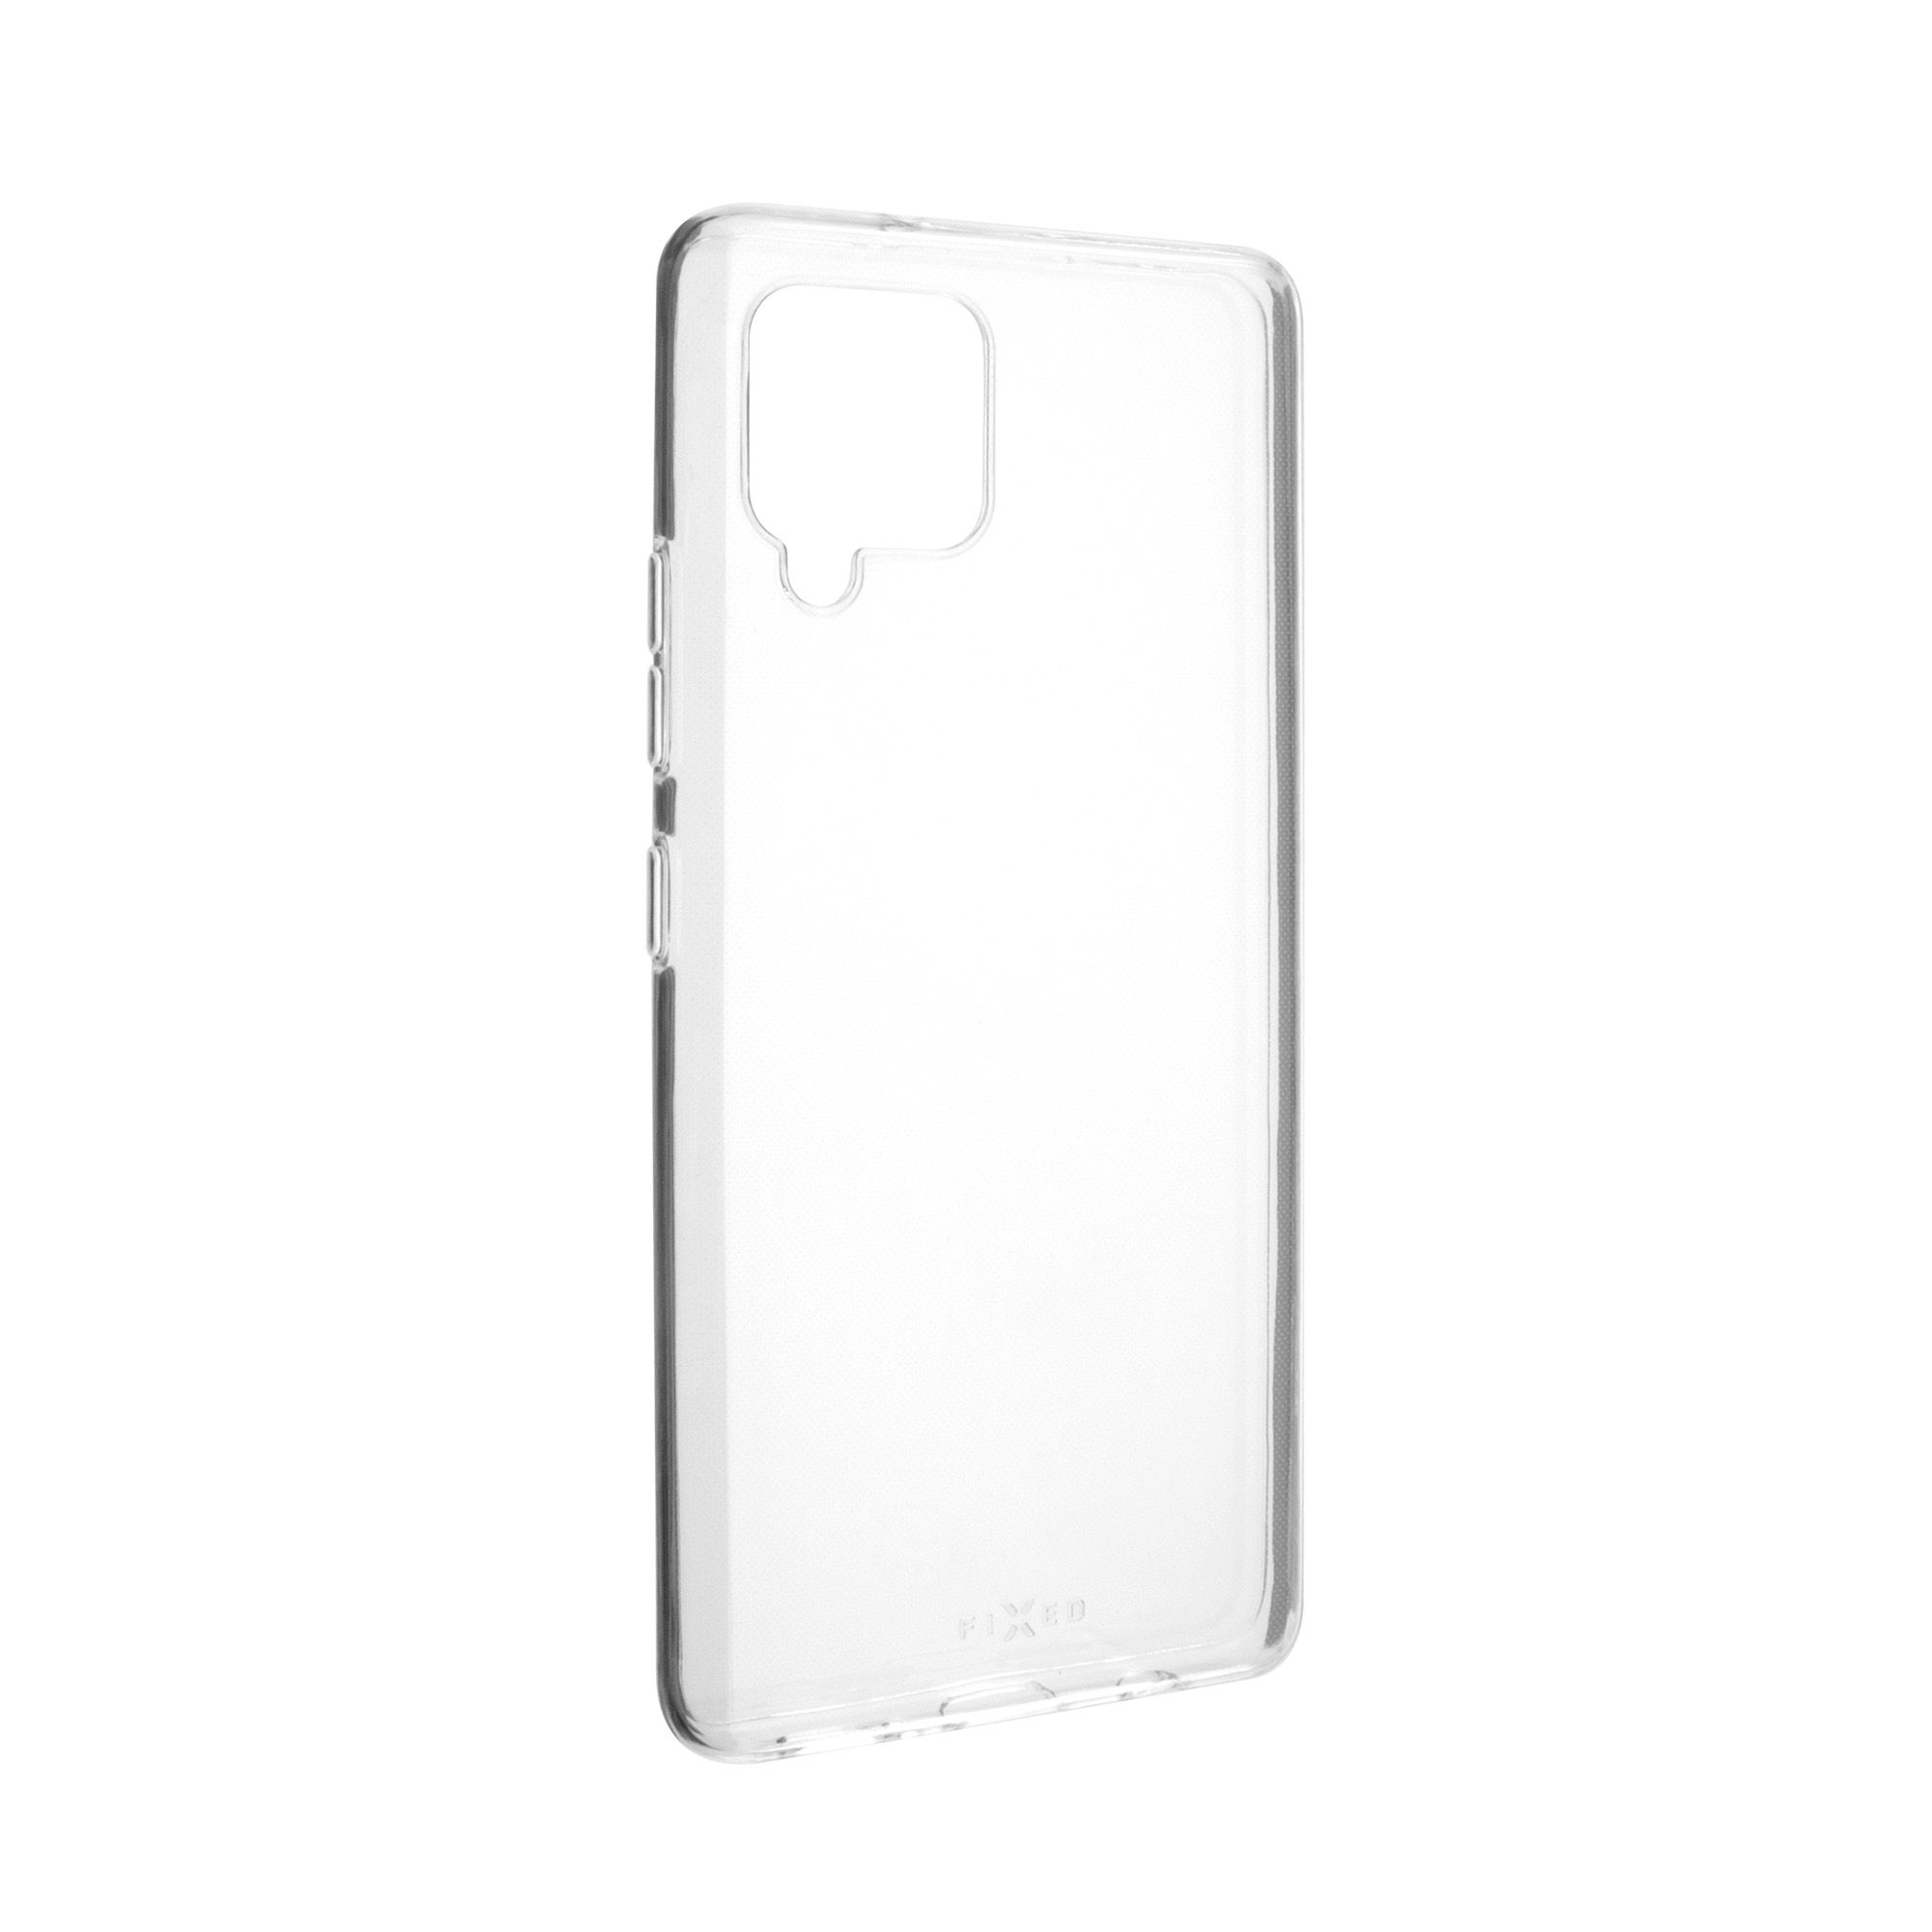 Ultratenké TPU gelové pouzdro Skin pro Samsung Galaxy A42 5G/ M42 5G, 0,6 mm, čiré